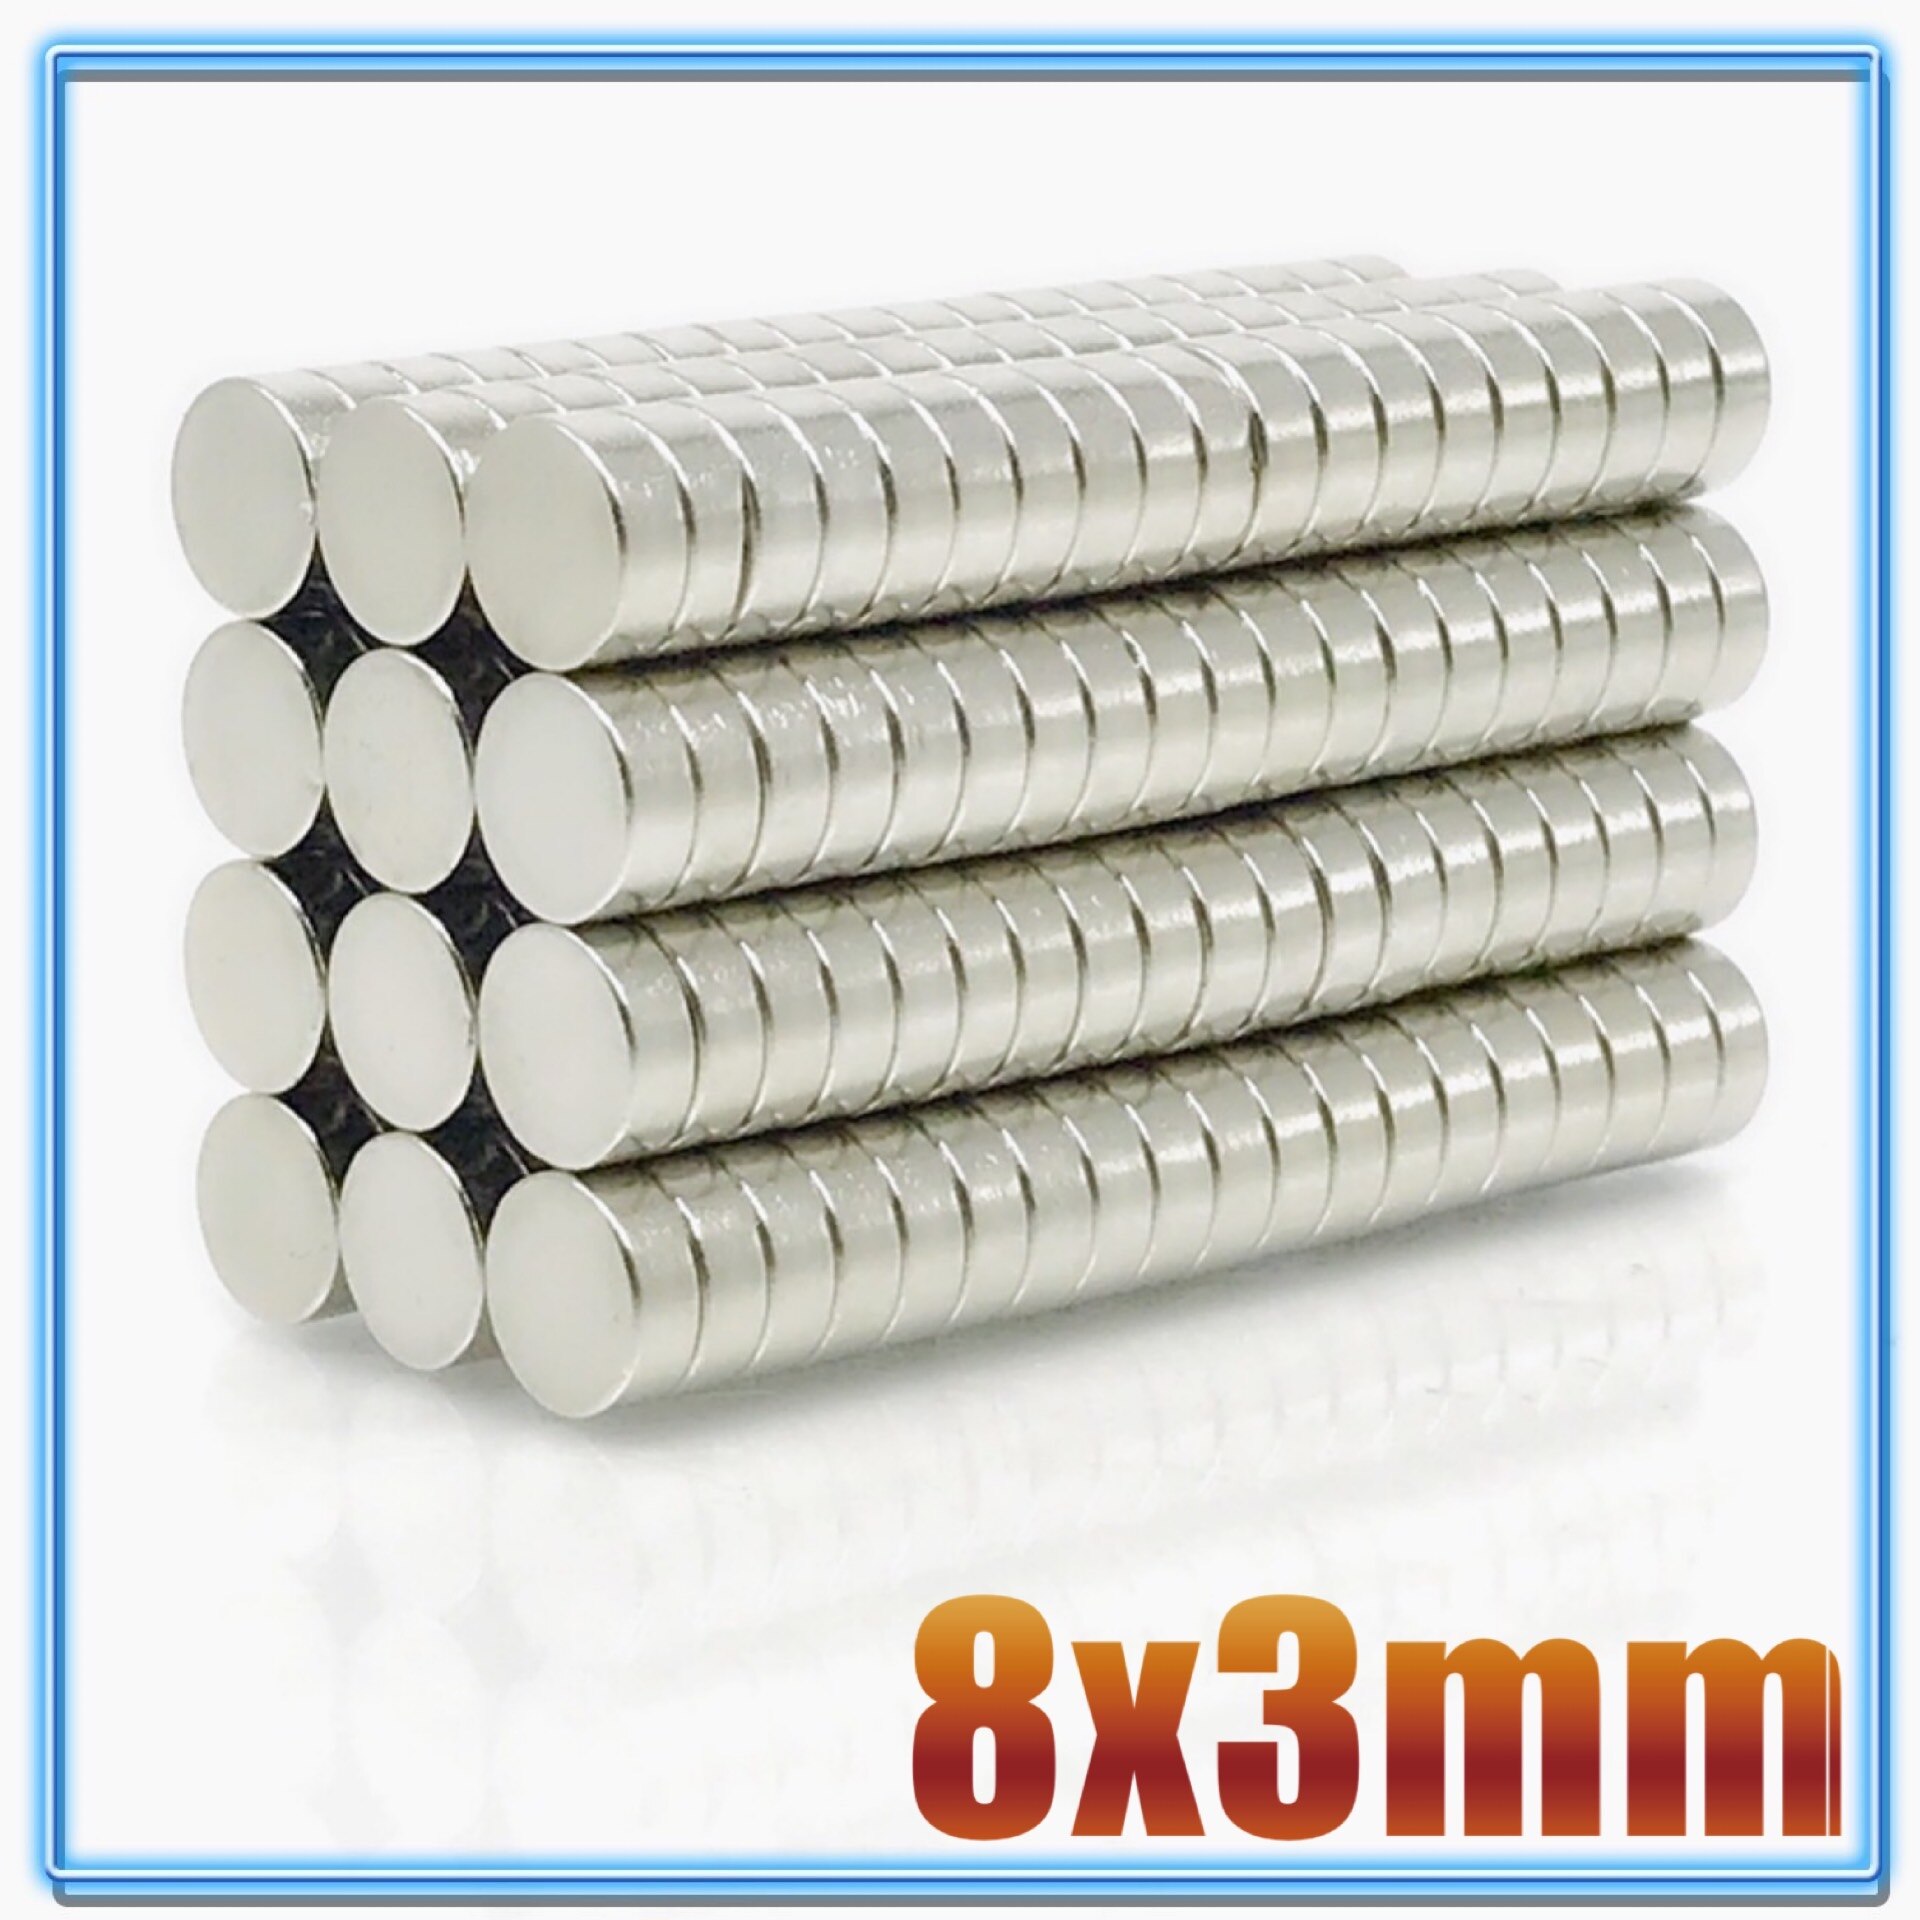 100 stk  n35 rund magnet 8 x 1 8 x 1.5 8 x 2 8 x 3 8 x 4 8 x 5 8 x 6 8 x 10 mm neodymmagnet permanent ndfeb superstærke kraftige magneter: 8 x 3(100 stk)